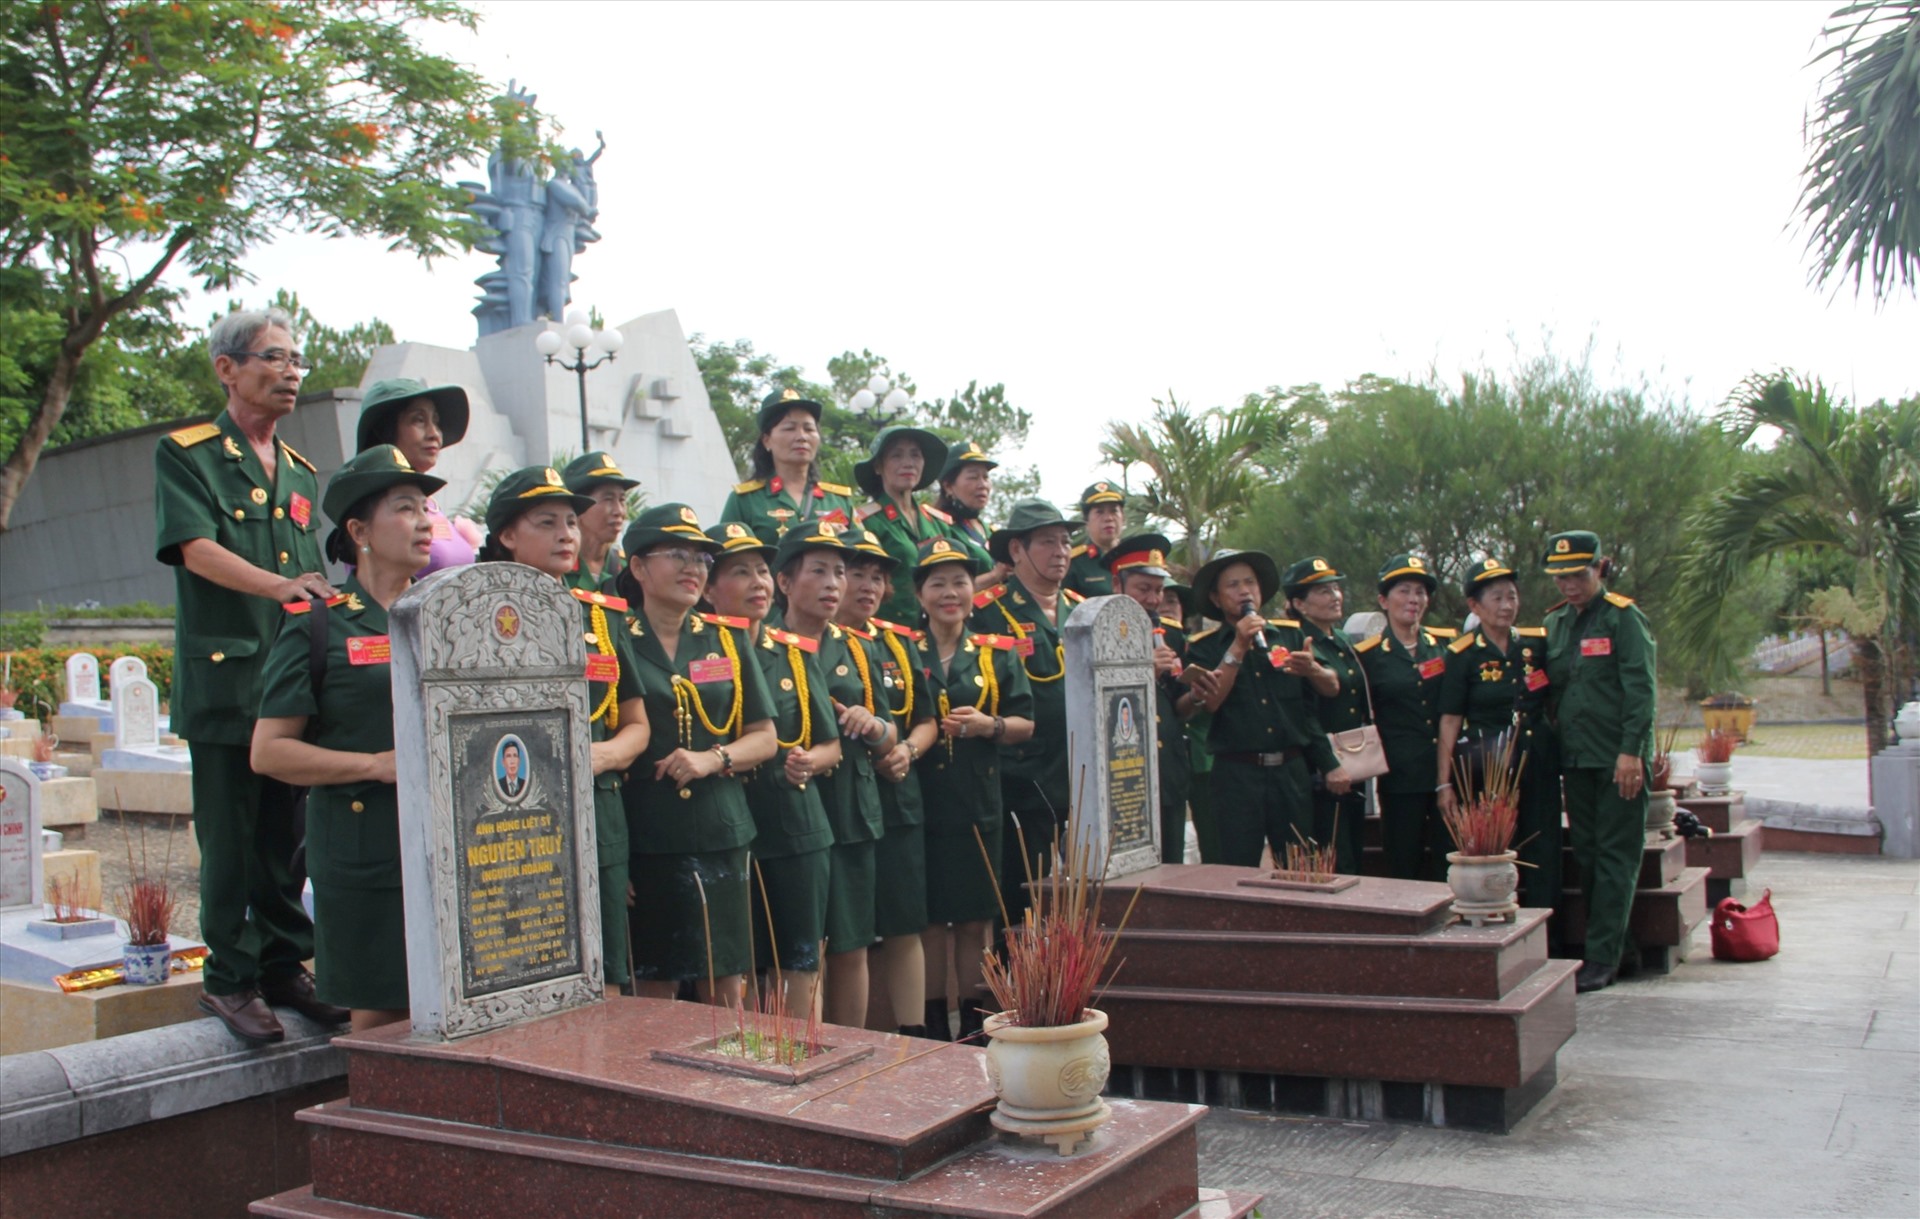 Cũng gần dịp 27.7, nhiều đoàn cựu chiến binh đến Quảng Trị thăm lại chiến trường xưa. Họ tìm đến các đồng đội đang yên nghỉ tại Nghĩa trang liệt sĩ quốc gia đường 9 để hát cho đồng đội nghe.